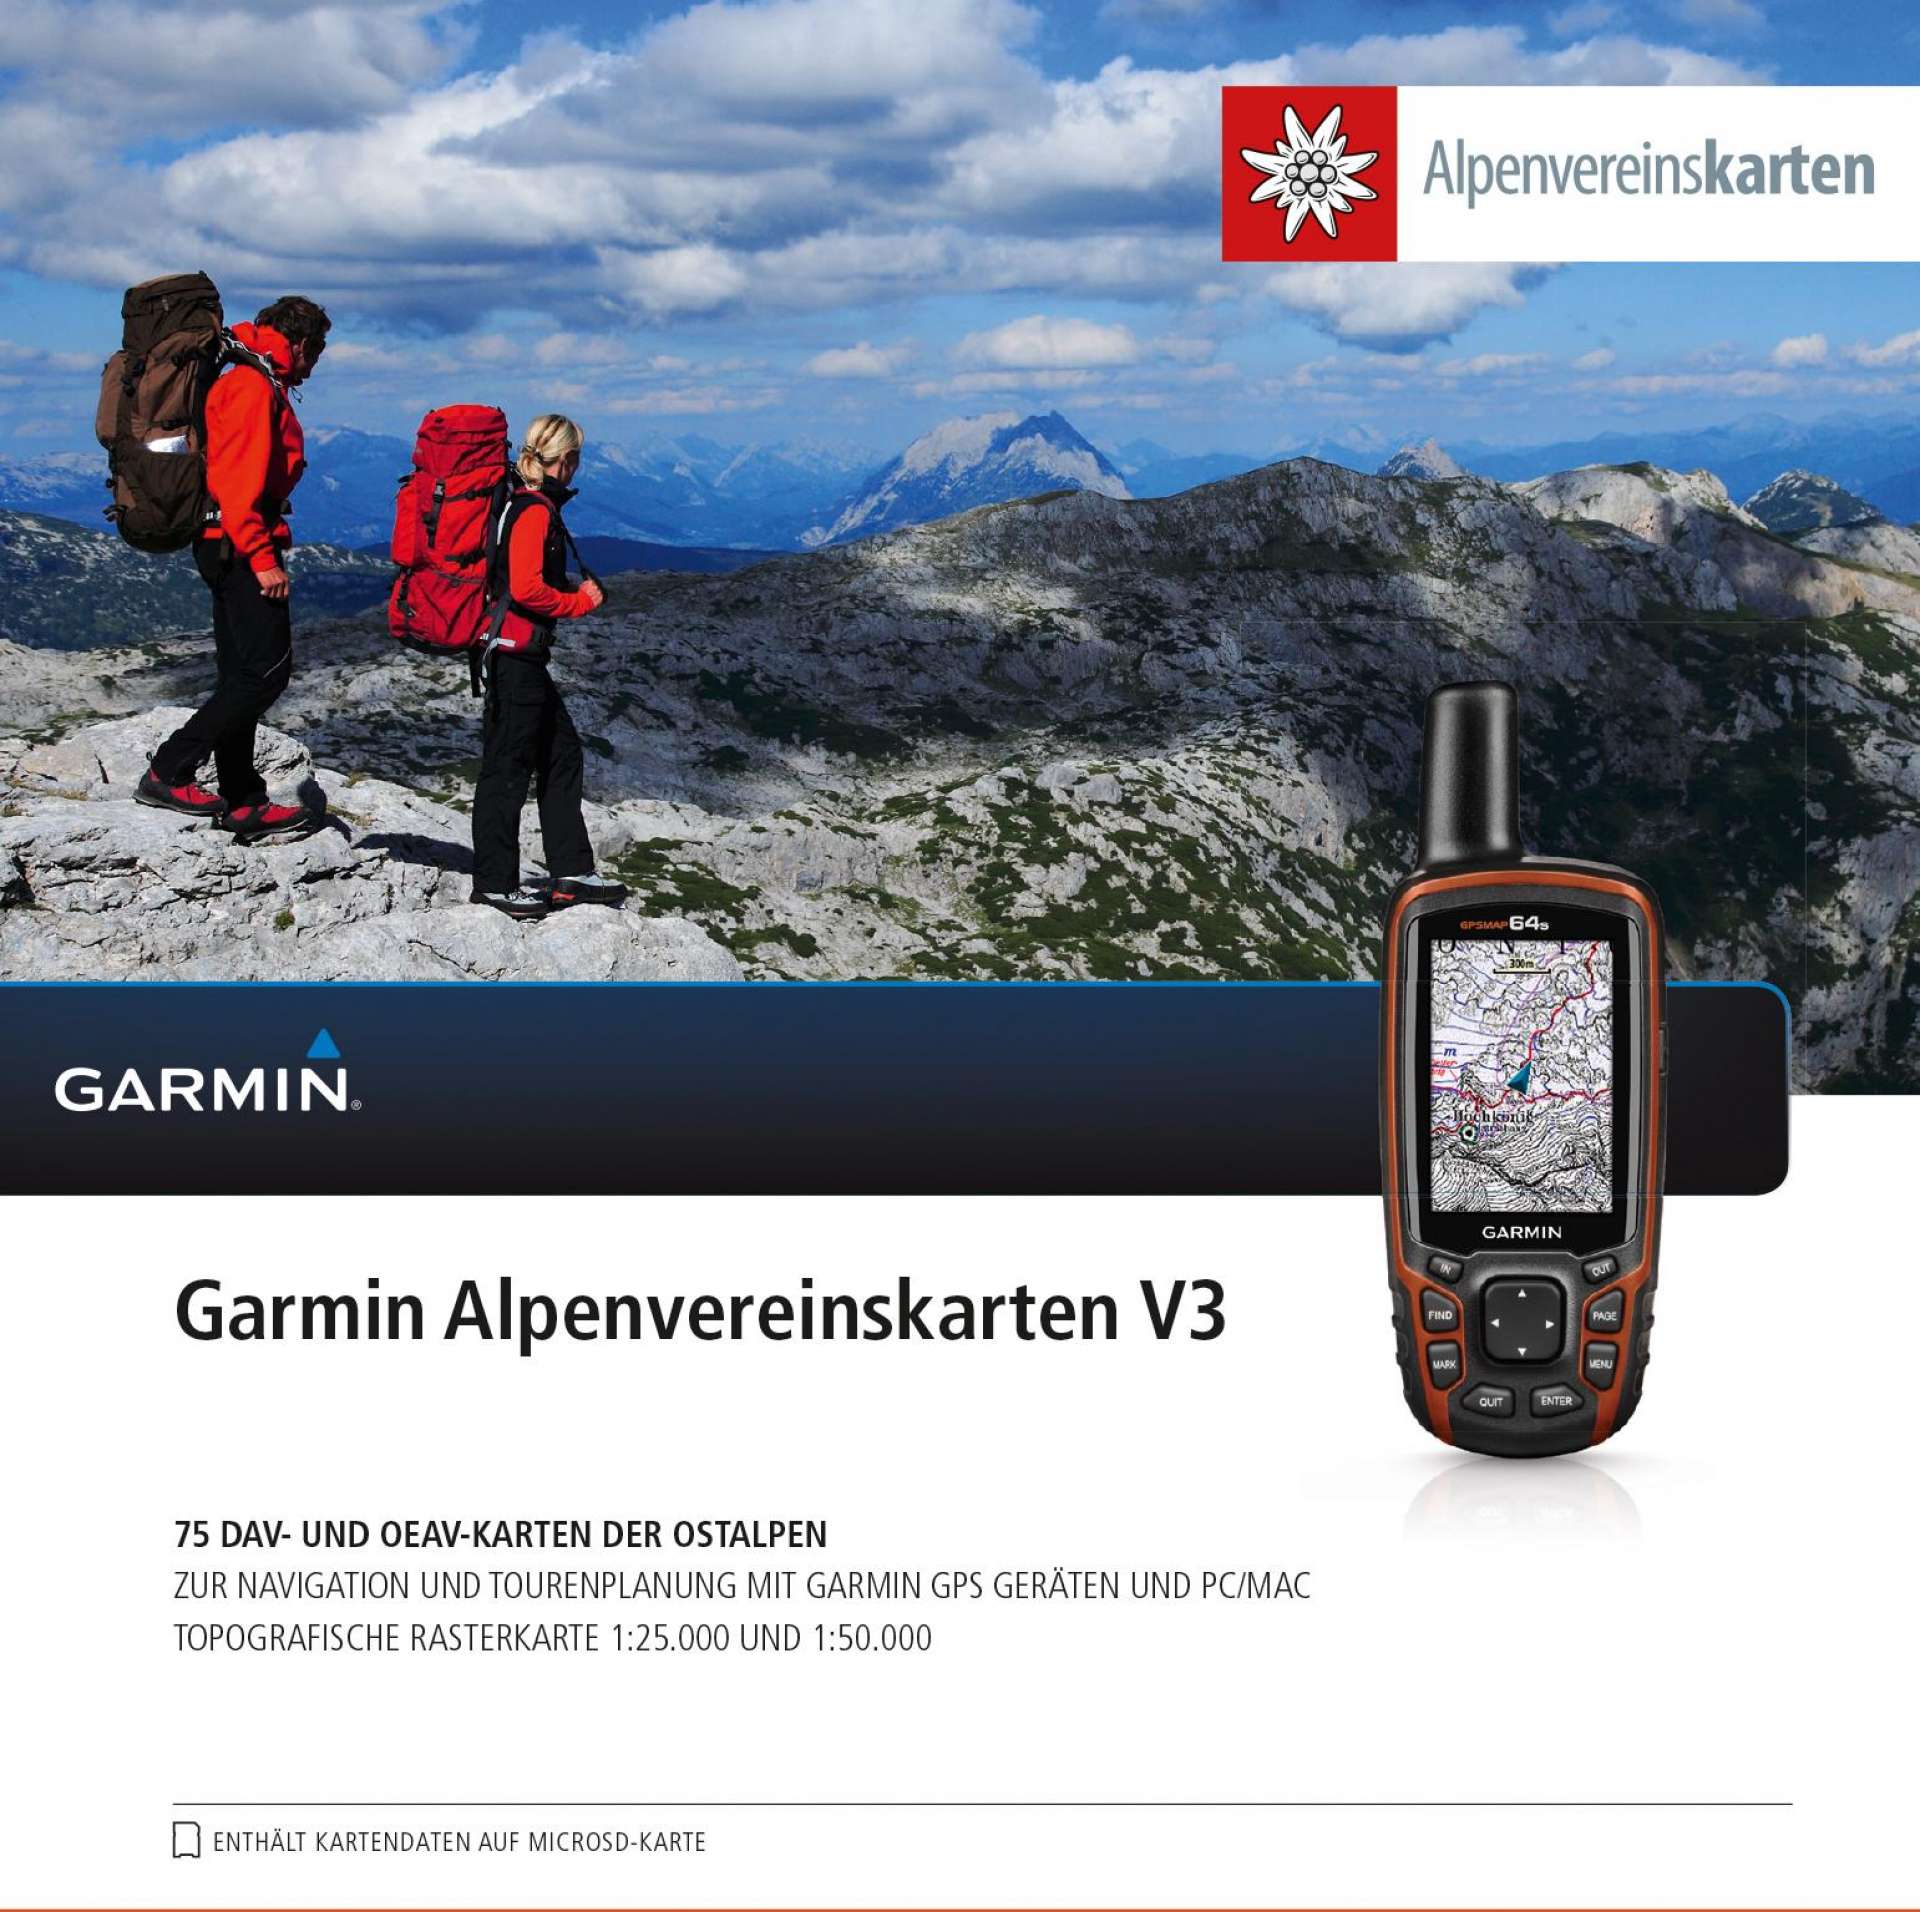 Garmin Alpenvereinskarten V3 microSD